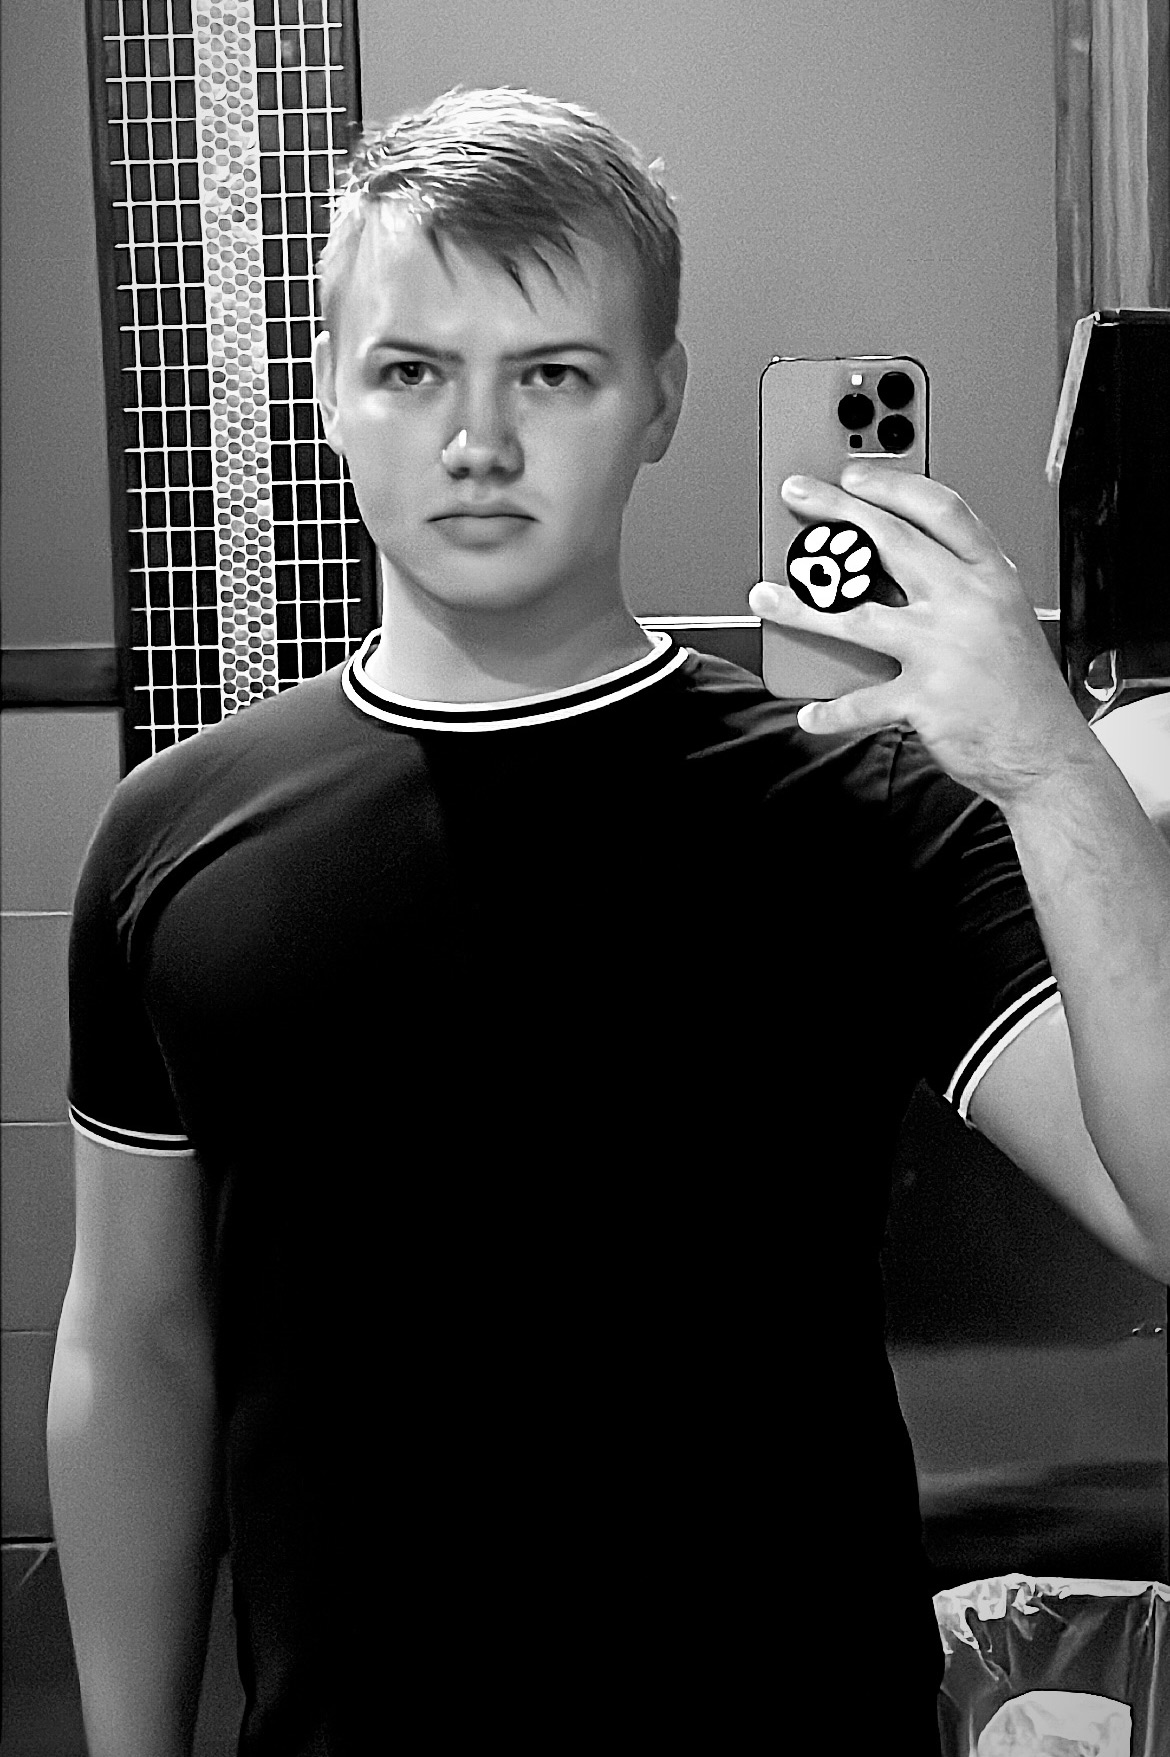 Me, in black & white